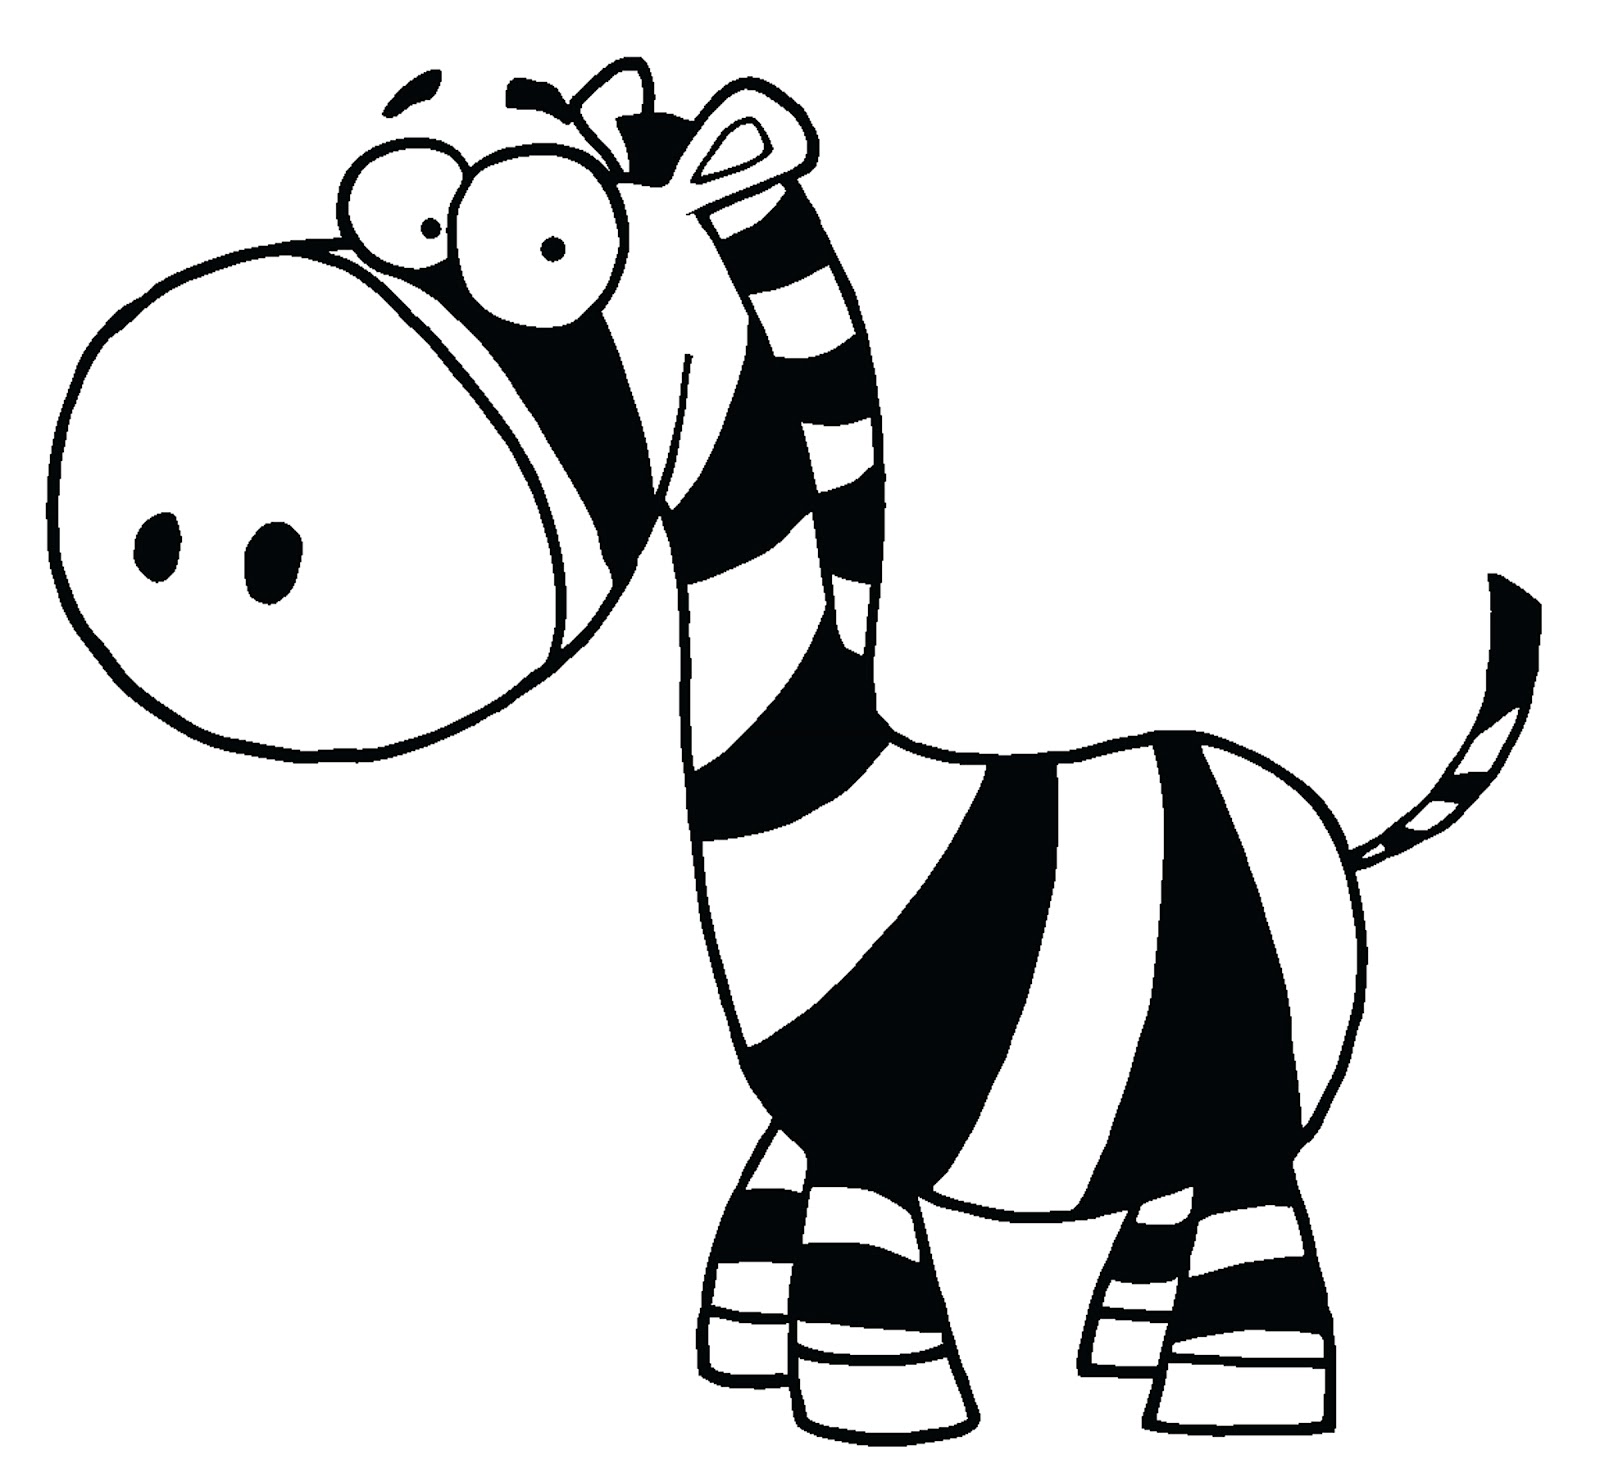 Zebra clipart cute